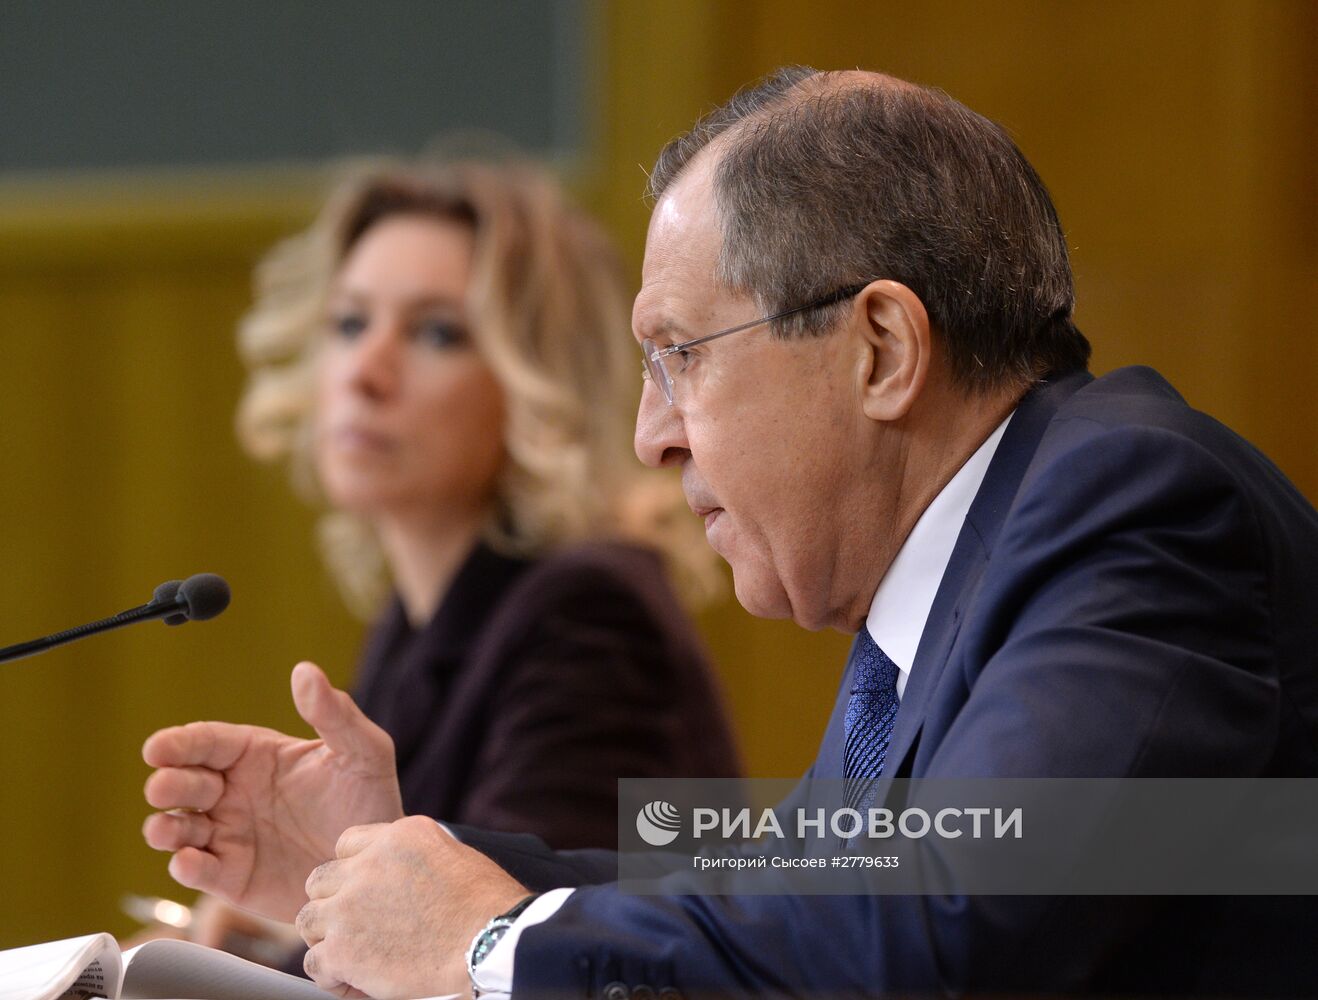 Пресс-конференция министра иностранных дел РФ С. Лаврова по итогам 2015 года